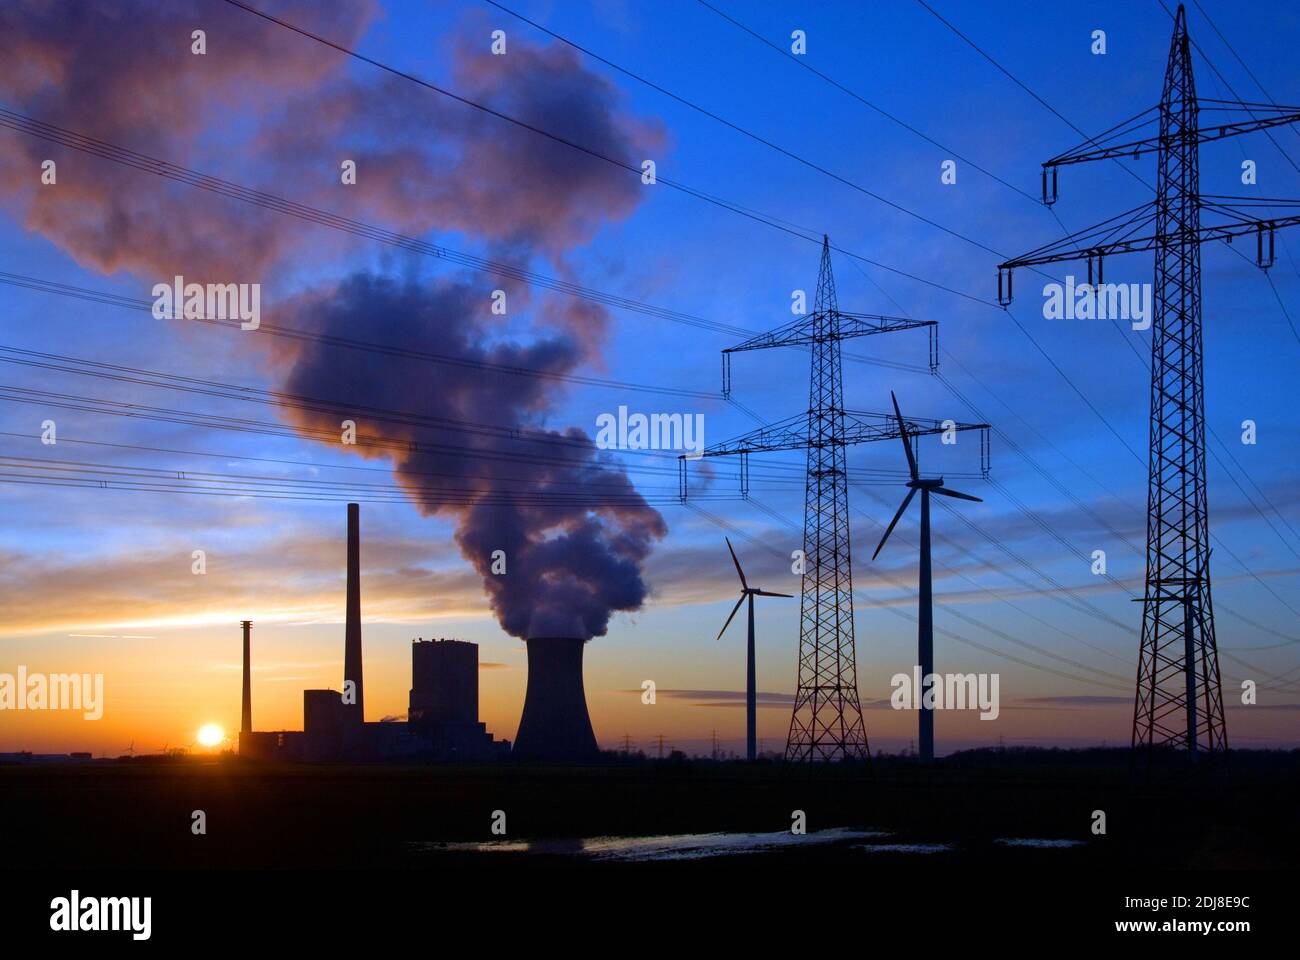 Deutschland, Niedersachsen, Kreis Peine, Mehrum, Kraftwerk Mehrum, Kohlekraftwerk, Steinkohlekraftwerk, Sonnenuntergang, geballte Energie Foto Stock